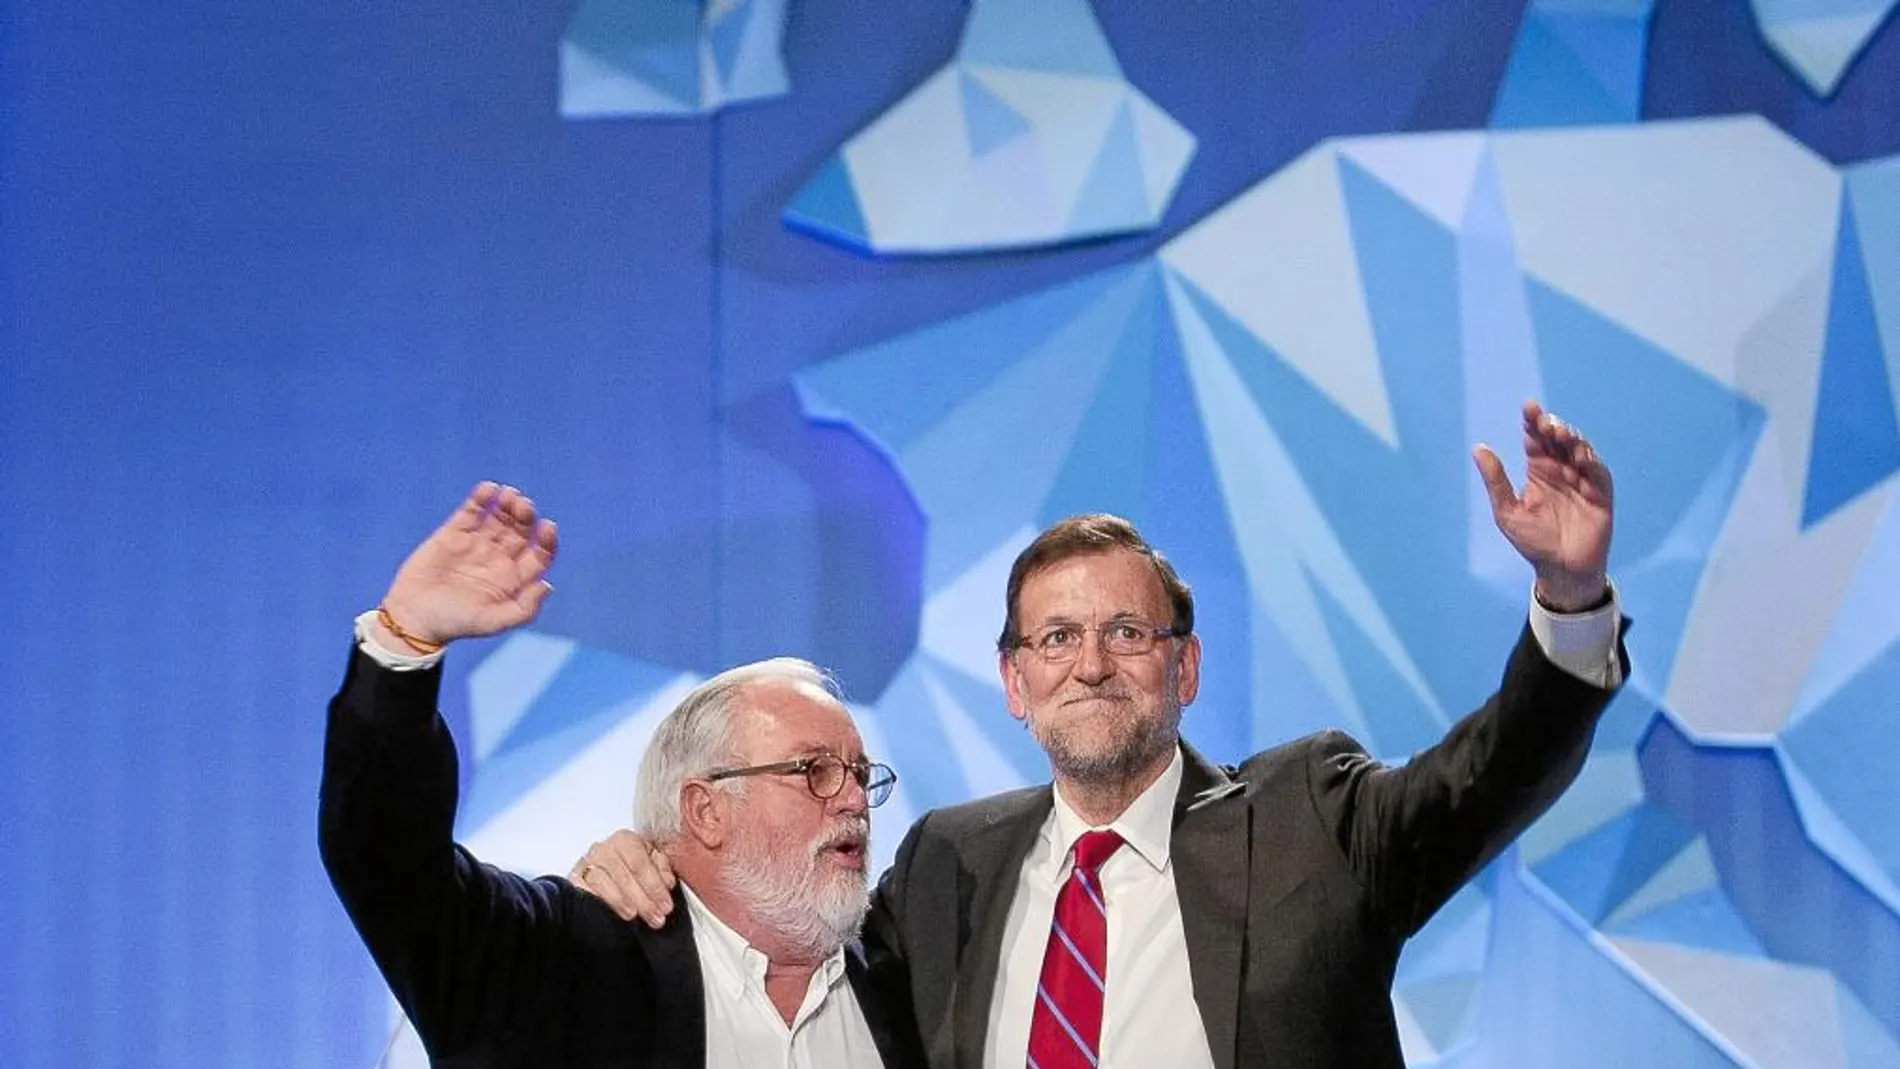 El presidente del Gobierno, Mariano Rajoy (d) y el cabeza de lista del PP a las elecciones europeas, Miguel Arias Cañete, saludan durante el mitin de cierre de la campaña